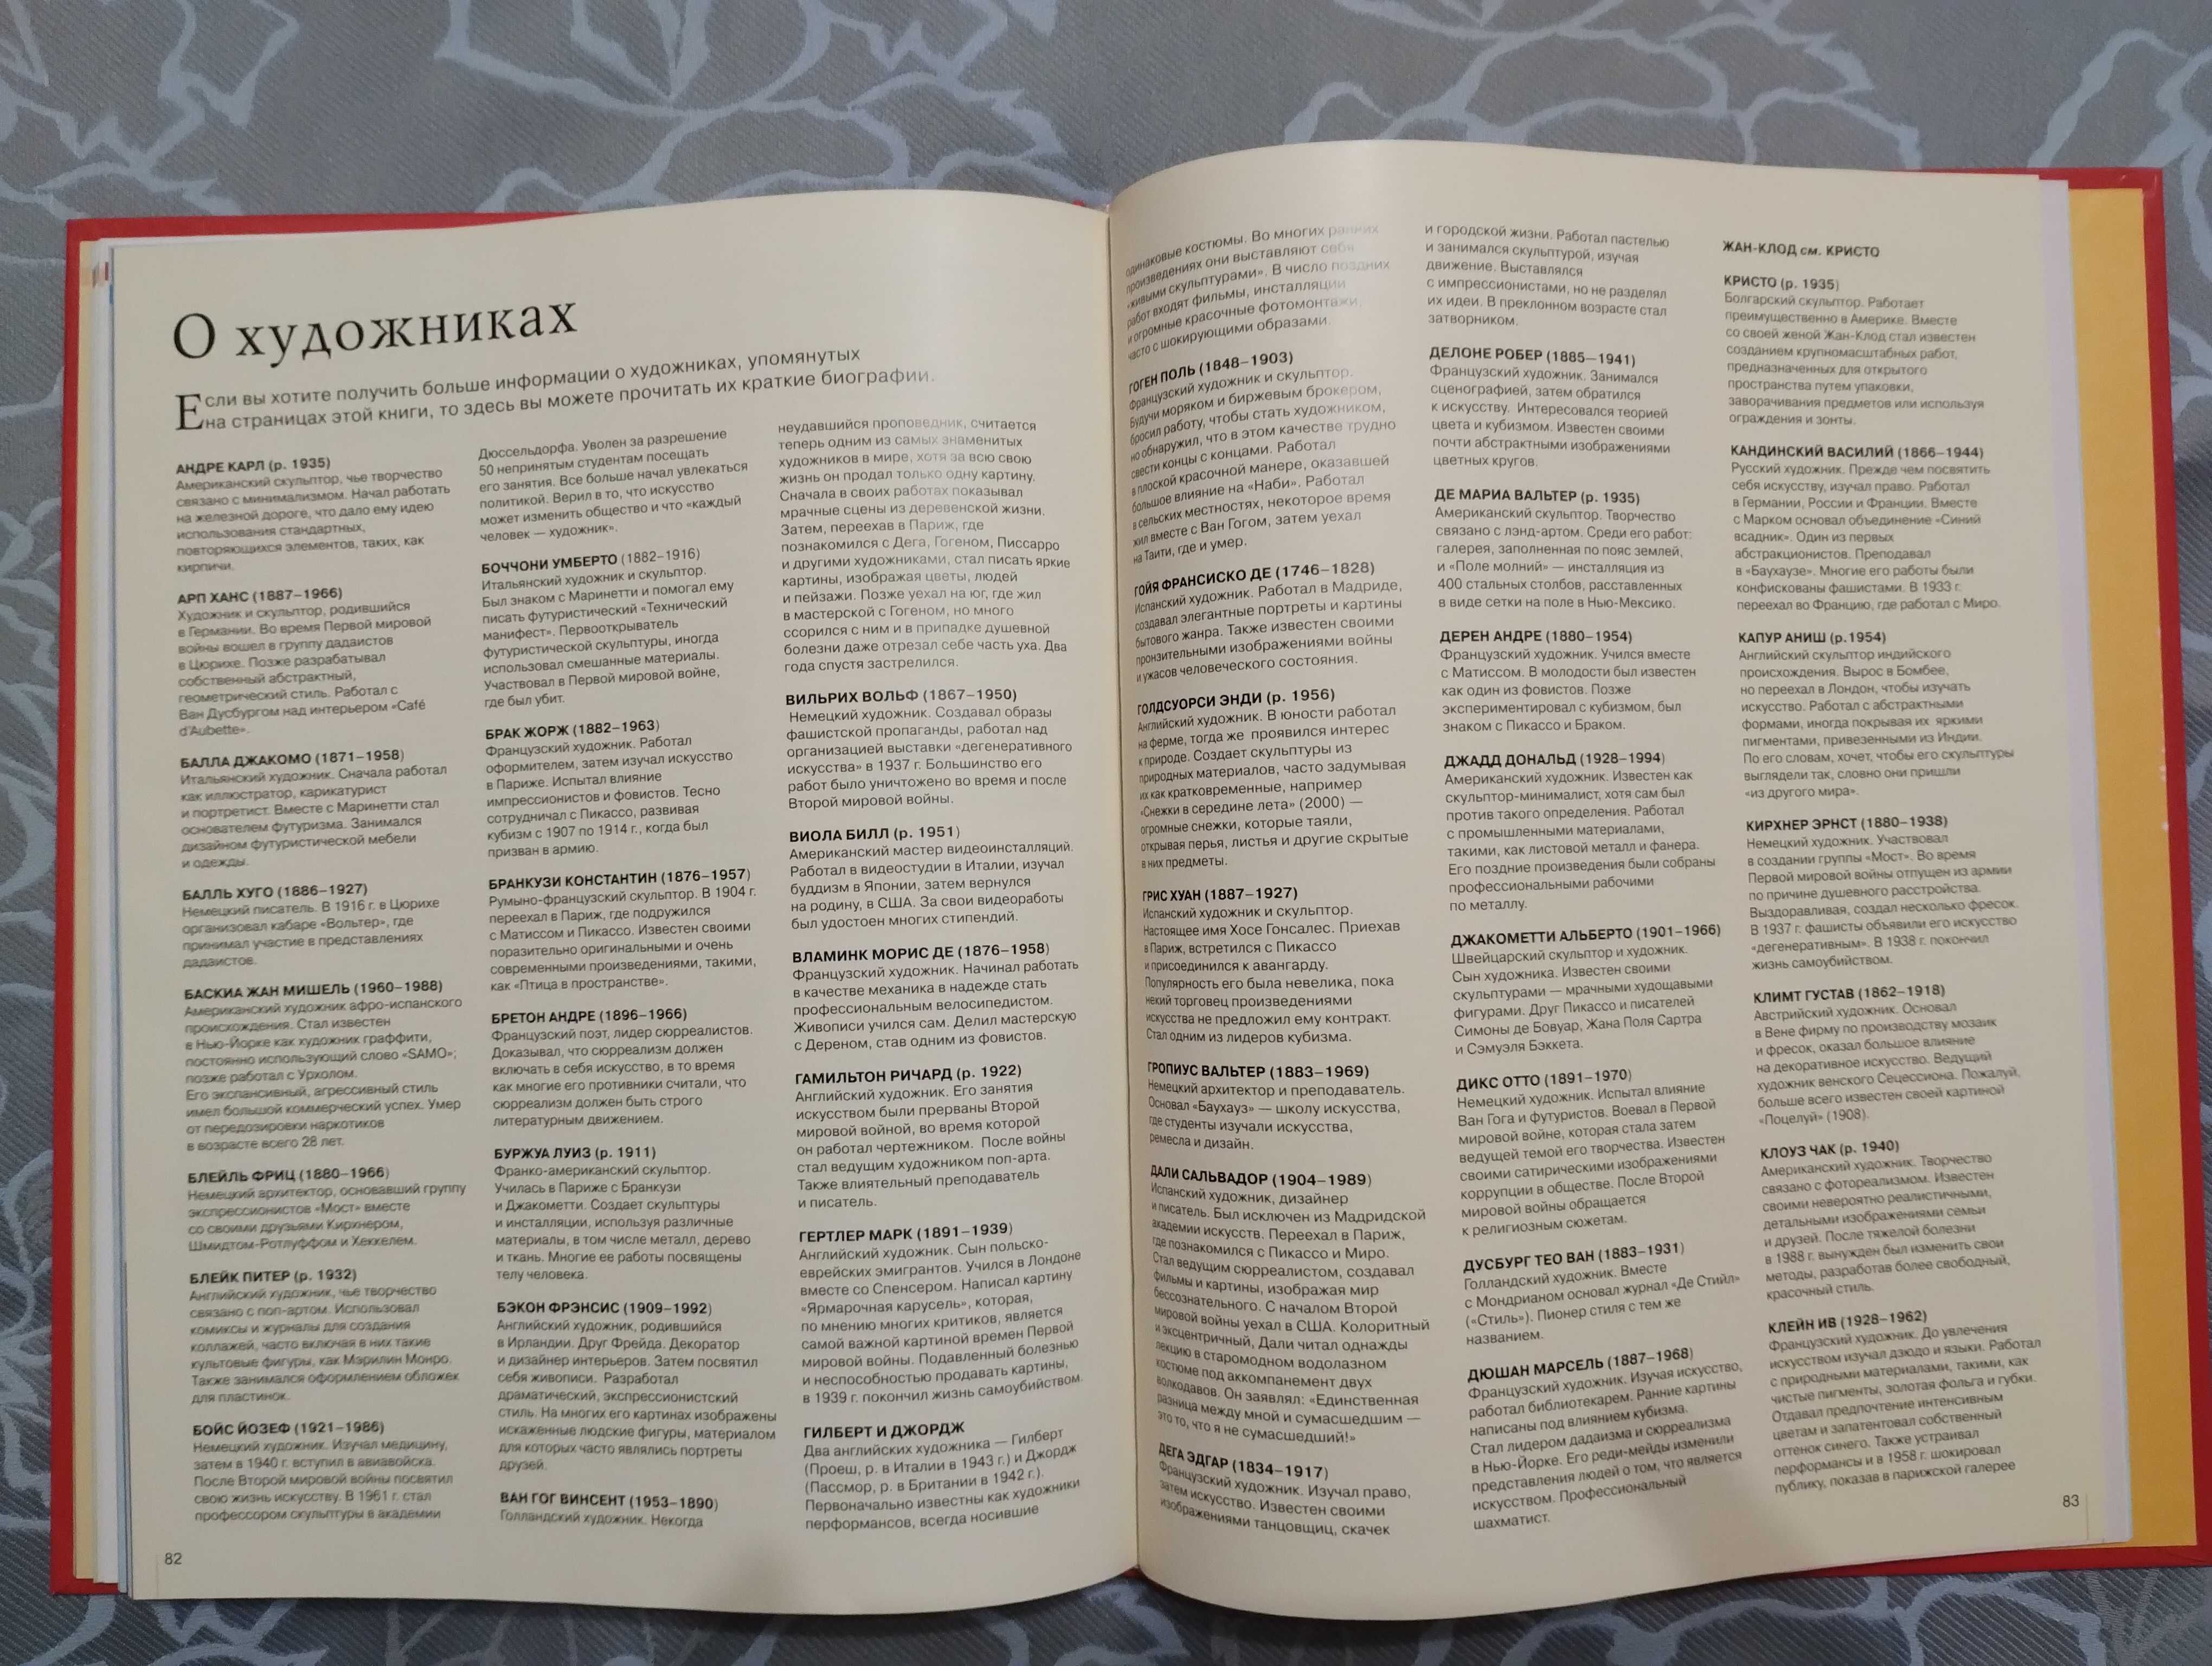 "Современное искусство" Рози Диккенс 2006 год тираж 3000 экземпляров.